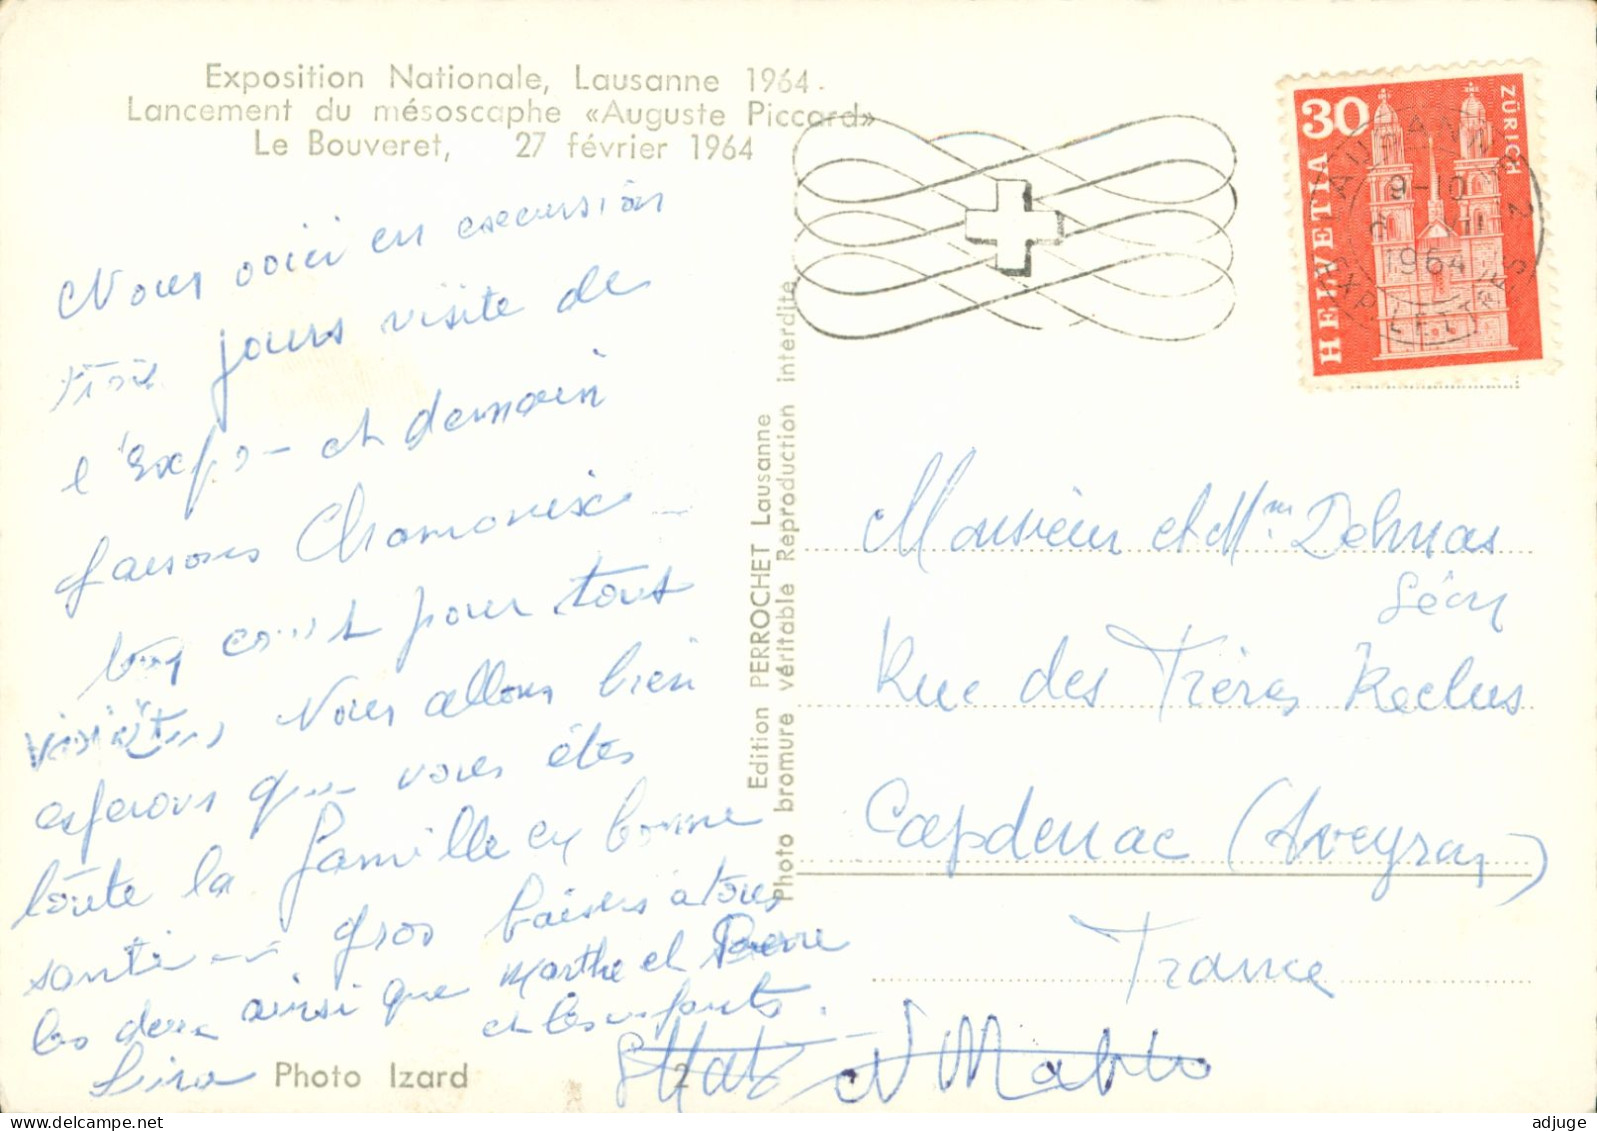 CPSM-Lancement Du Mésoscaphe"Auguste PICCARD" LE BOUVERET Le 27 Février 1964* Expo Nationale Lausanne - Lausanne